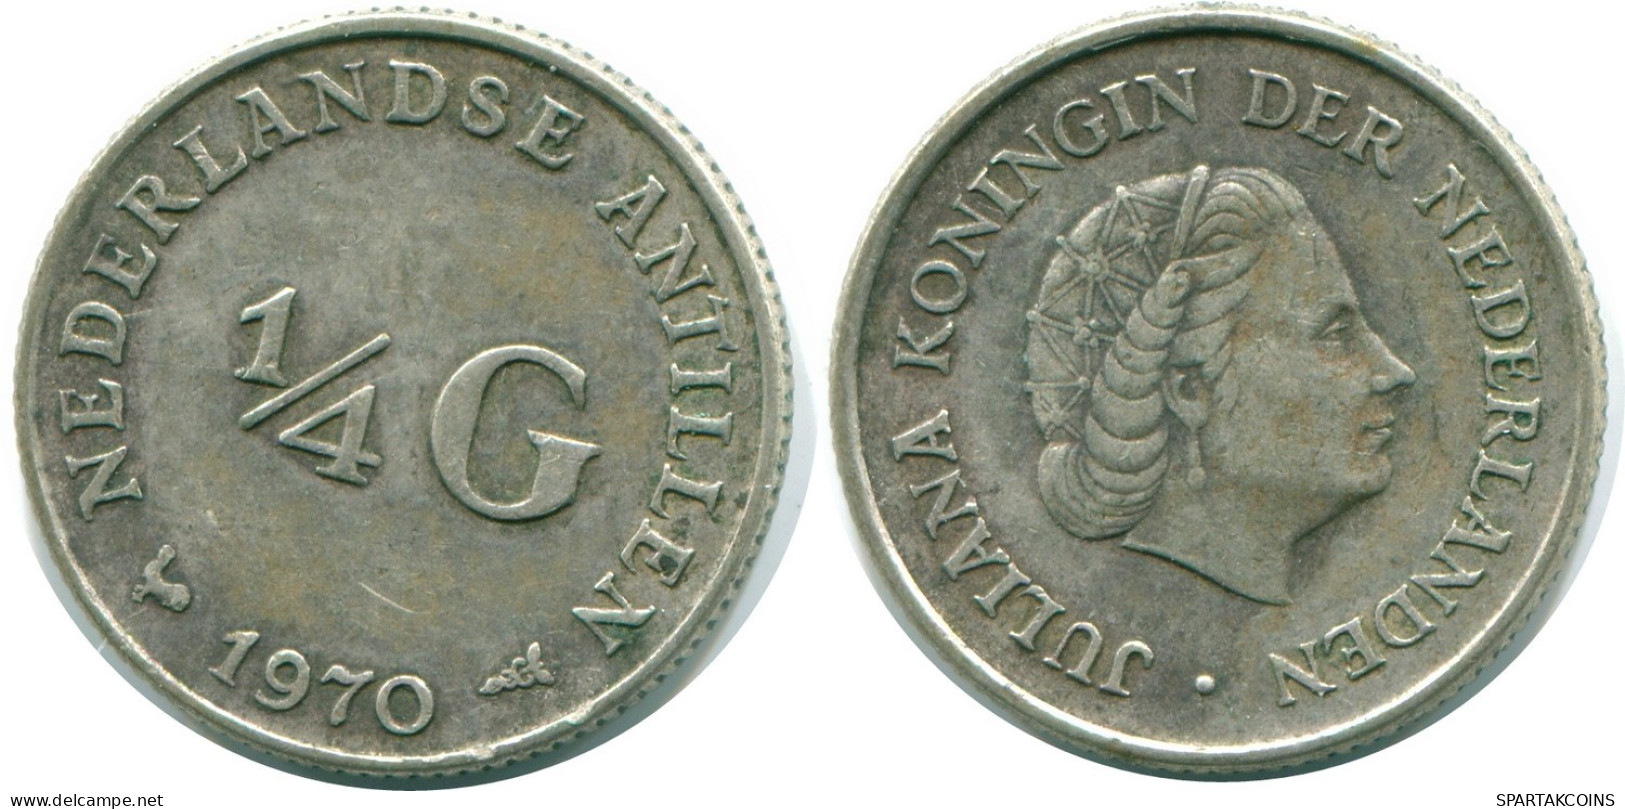 1/4 GULDEN 1970 NIEDERLÄNDISCHE ANTILLEN SILBER Koloniale Münze #NL11709.4.D.A - Niederländische Antillen